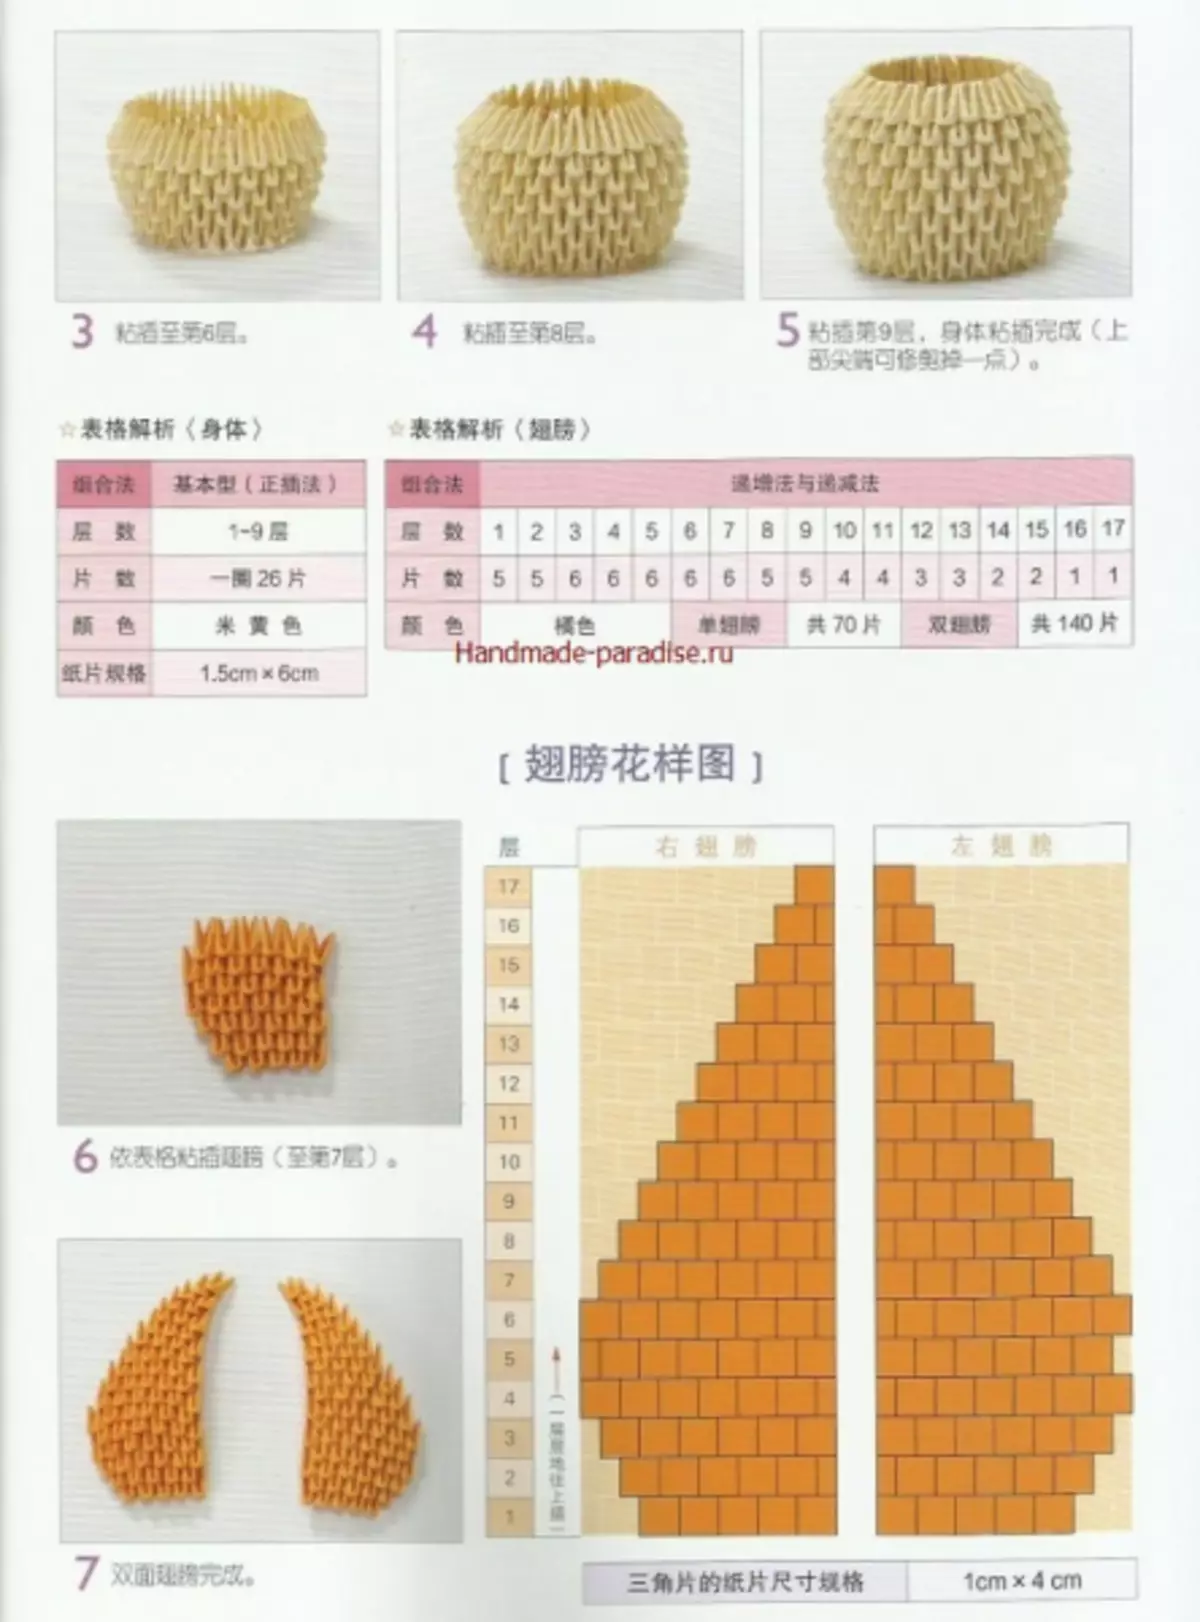 Modular Origami. Japanesch Magazin mat Masterklassen